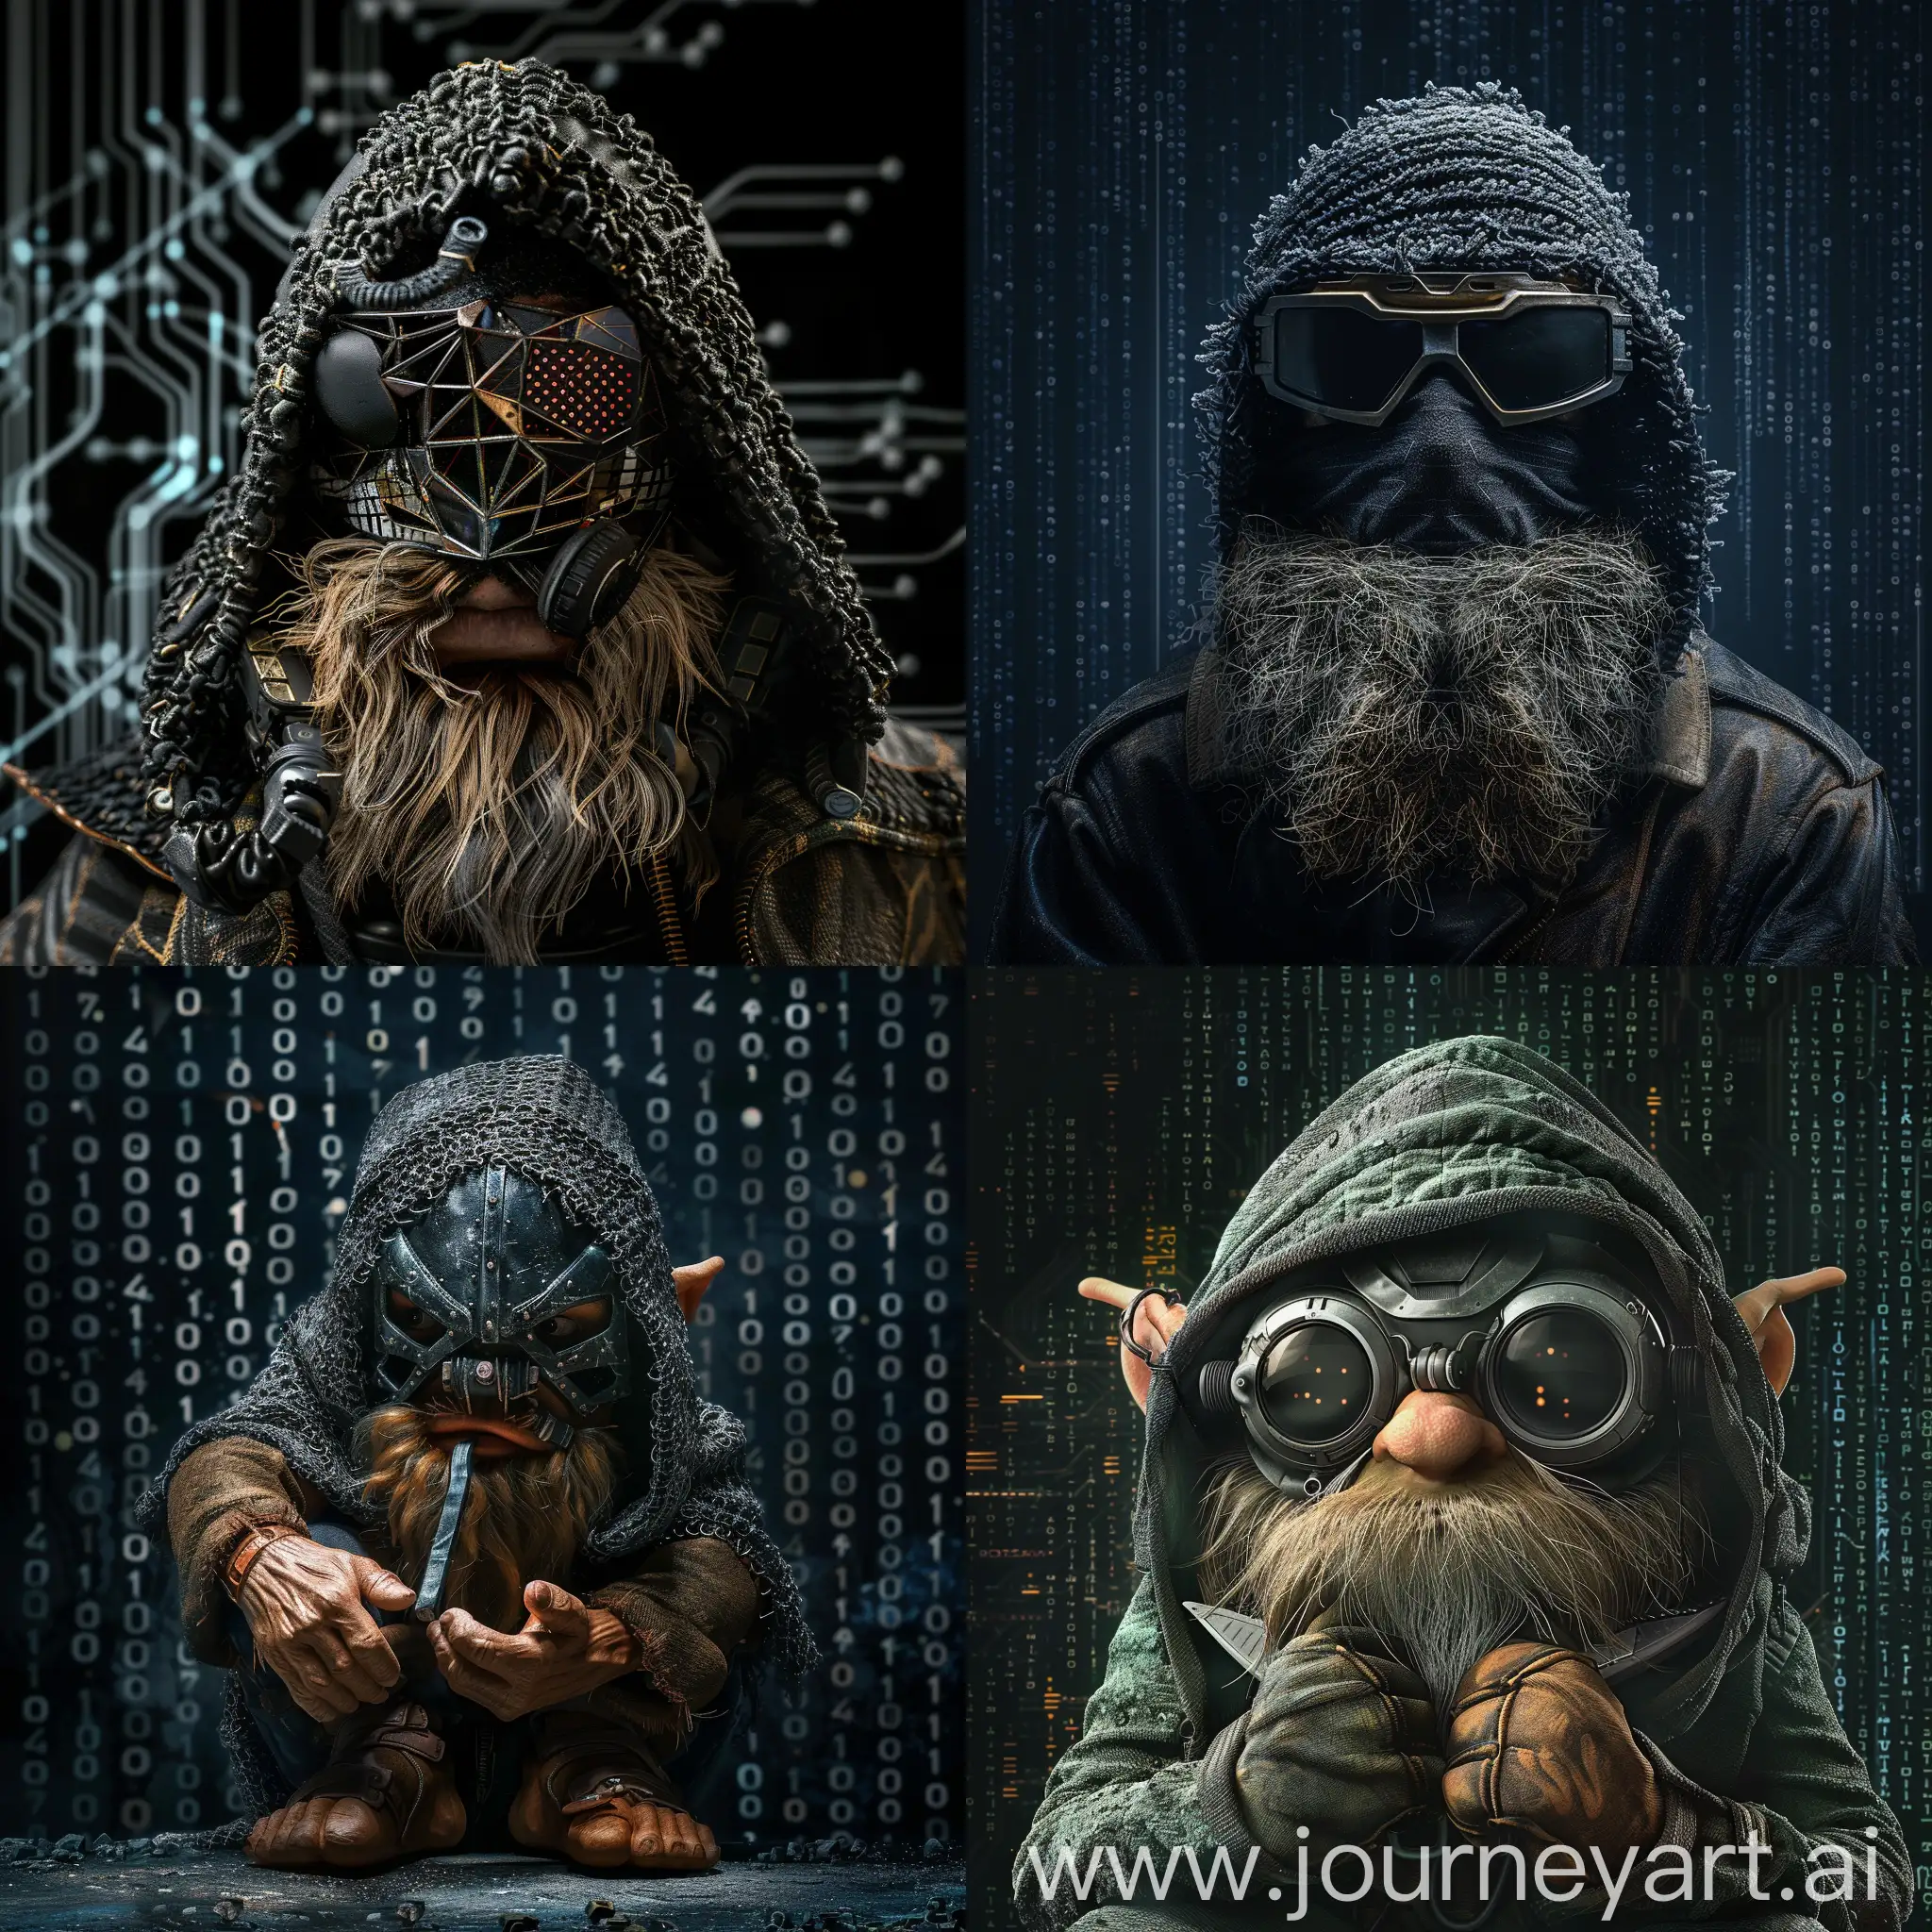 Dwarf-in-Hacker-Mask-on-Black-Cyber-Background